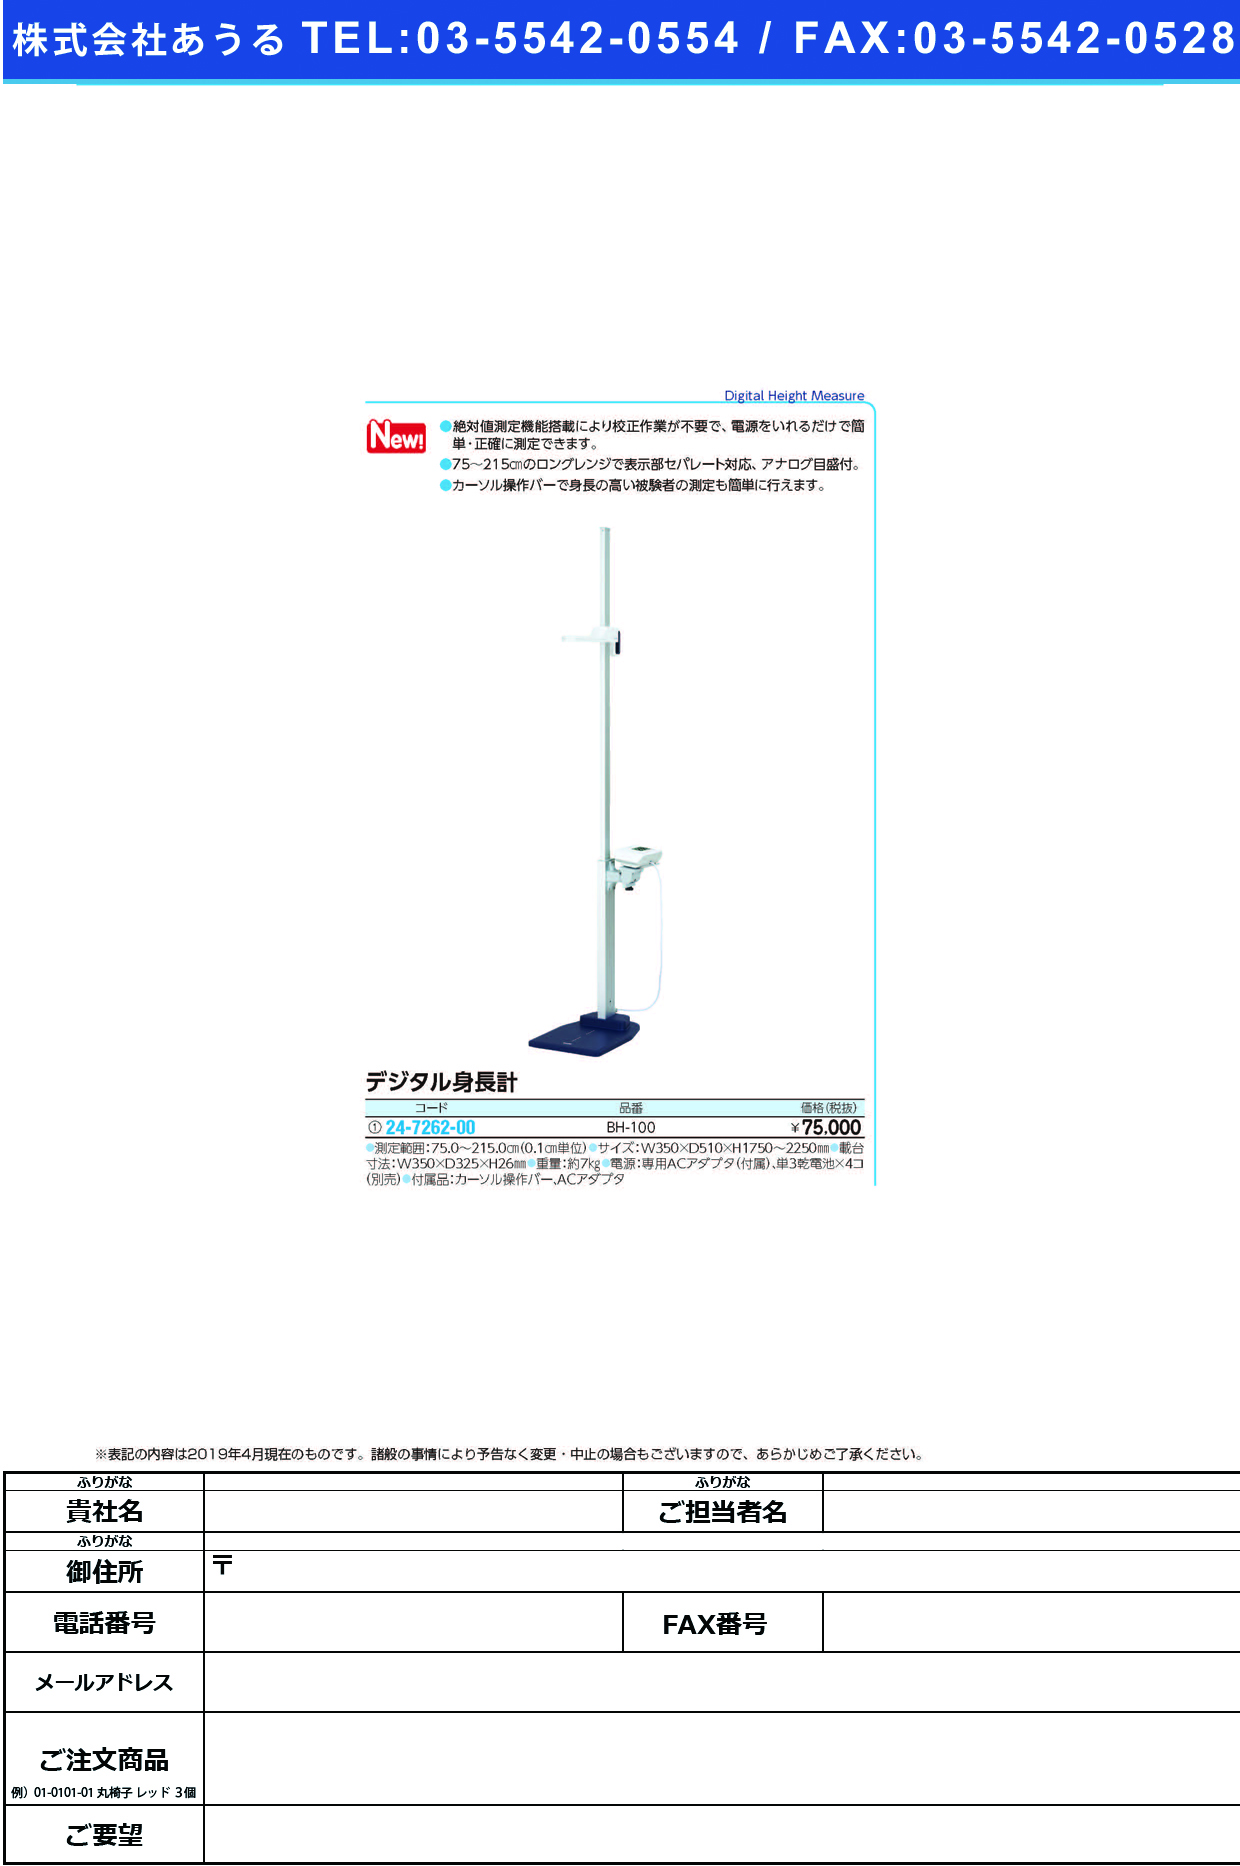 (24-7262-00)デジタル身長計BH-100 ﾃﾞｼﾞﾀﾙｼﾝﾁｮｳｹｲ(タニタ)【1台単位】【2019年カタログ商品】